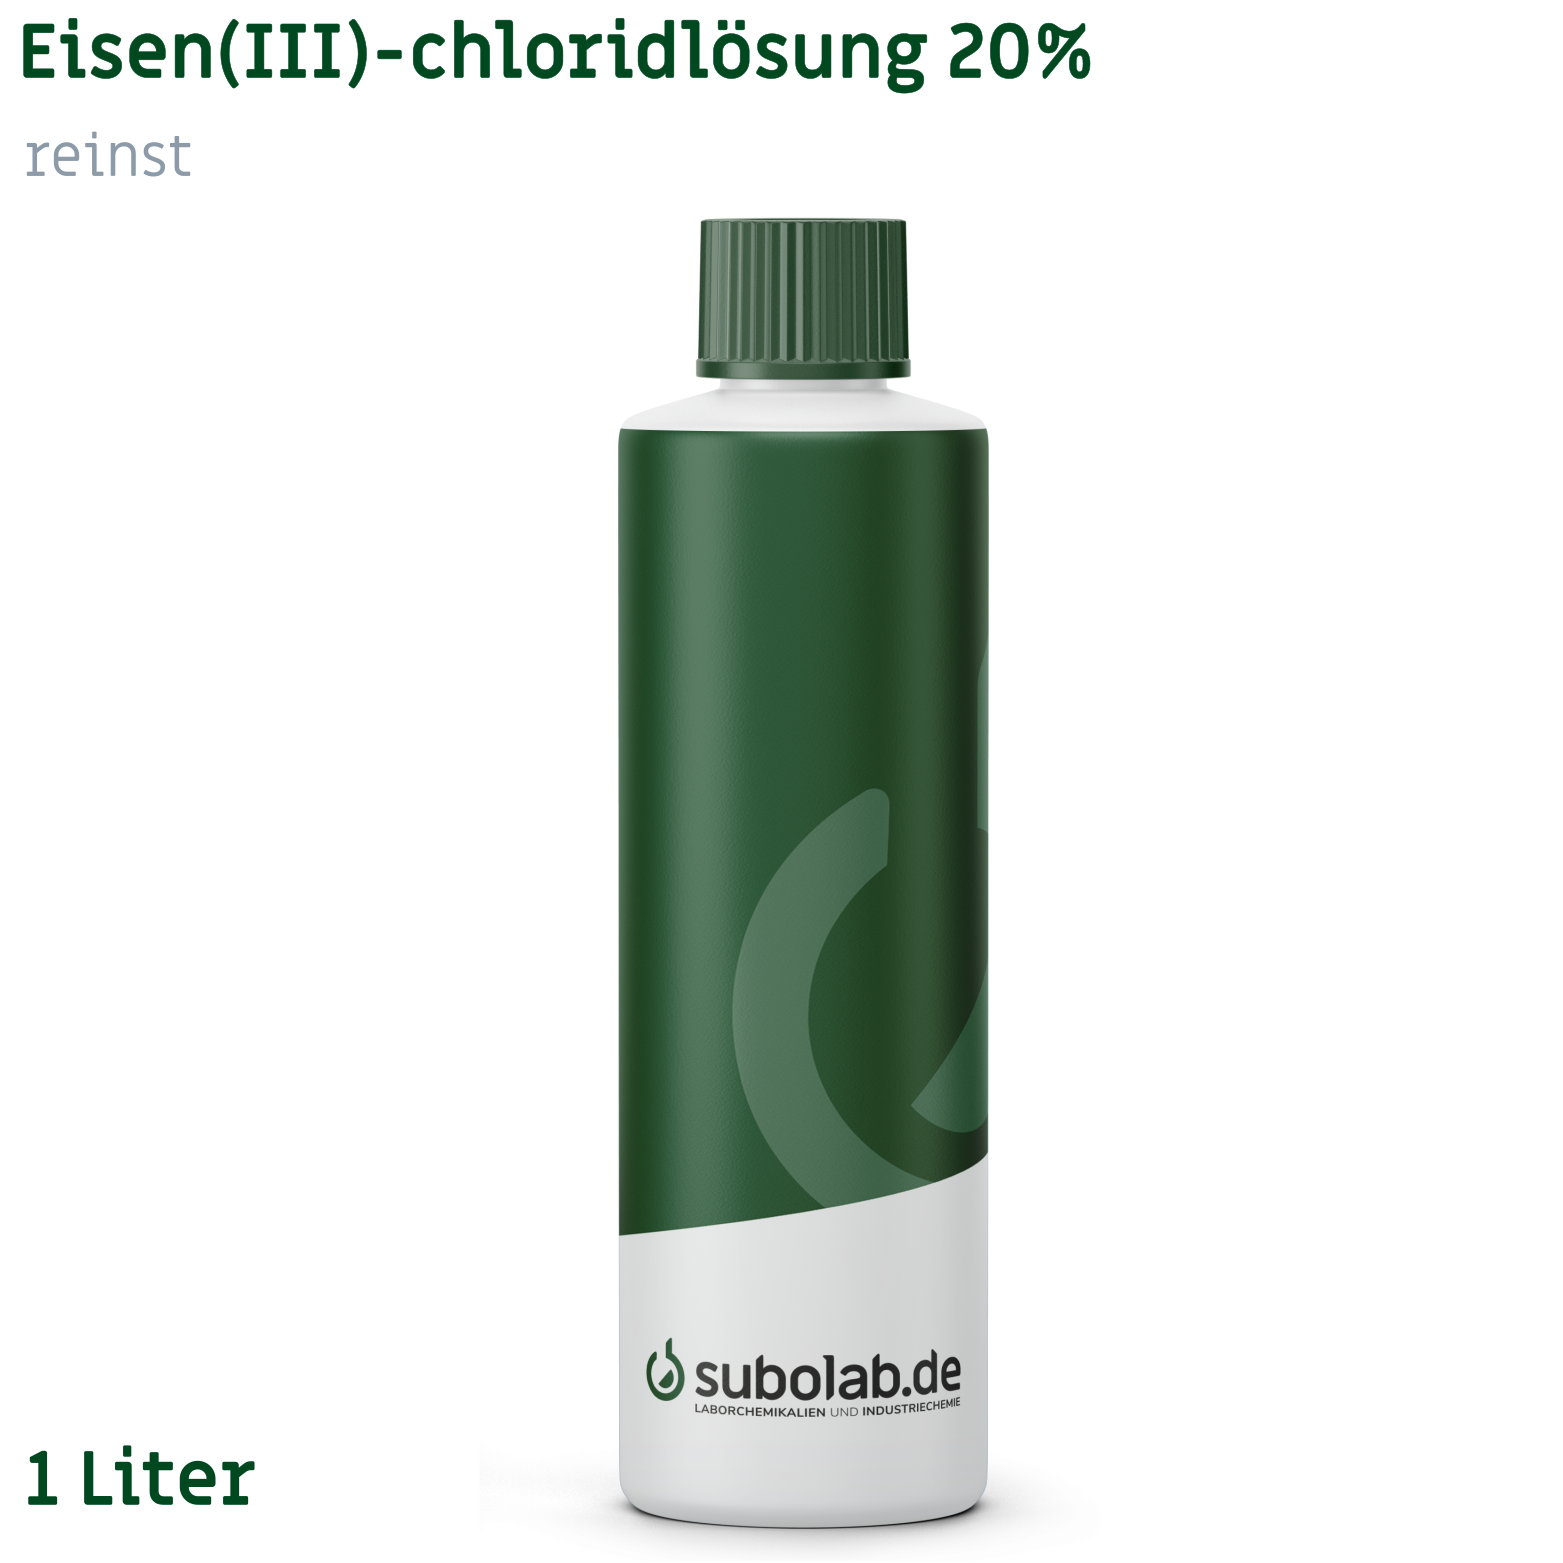 Bild von Eisen(III)-chloridlösung 20% reinst (1 Liter)